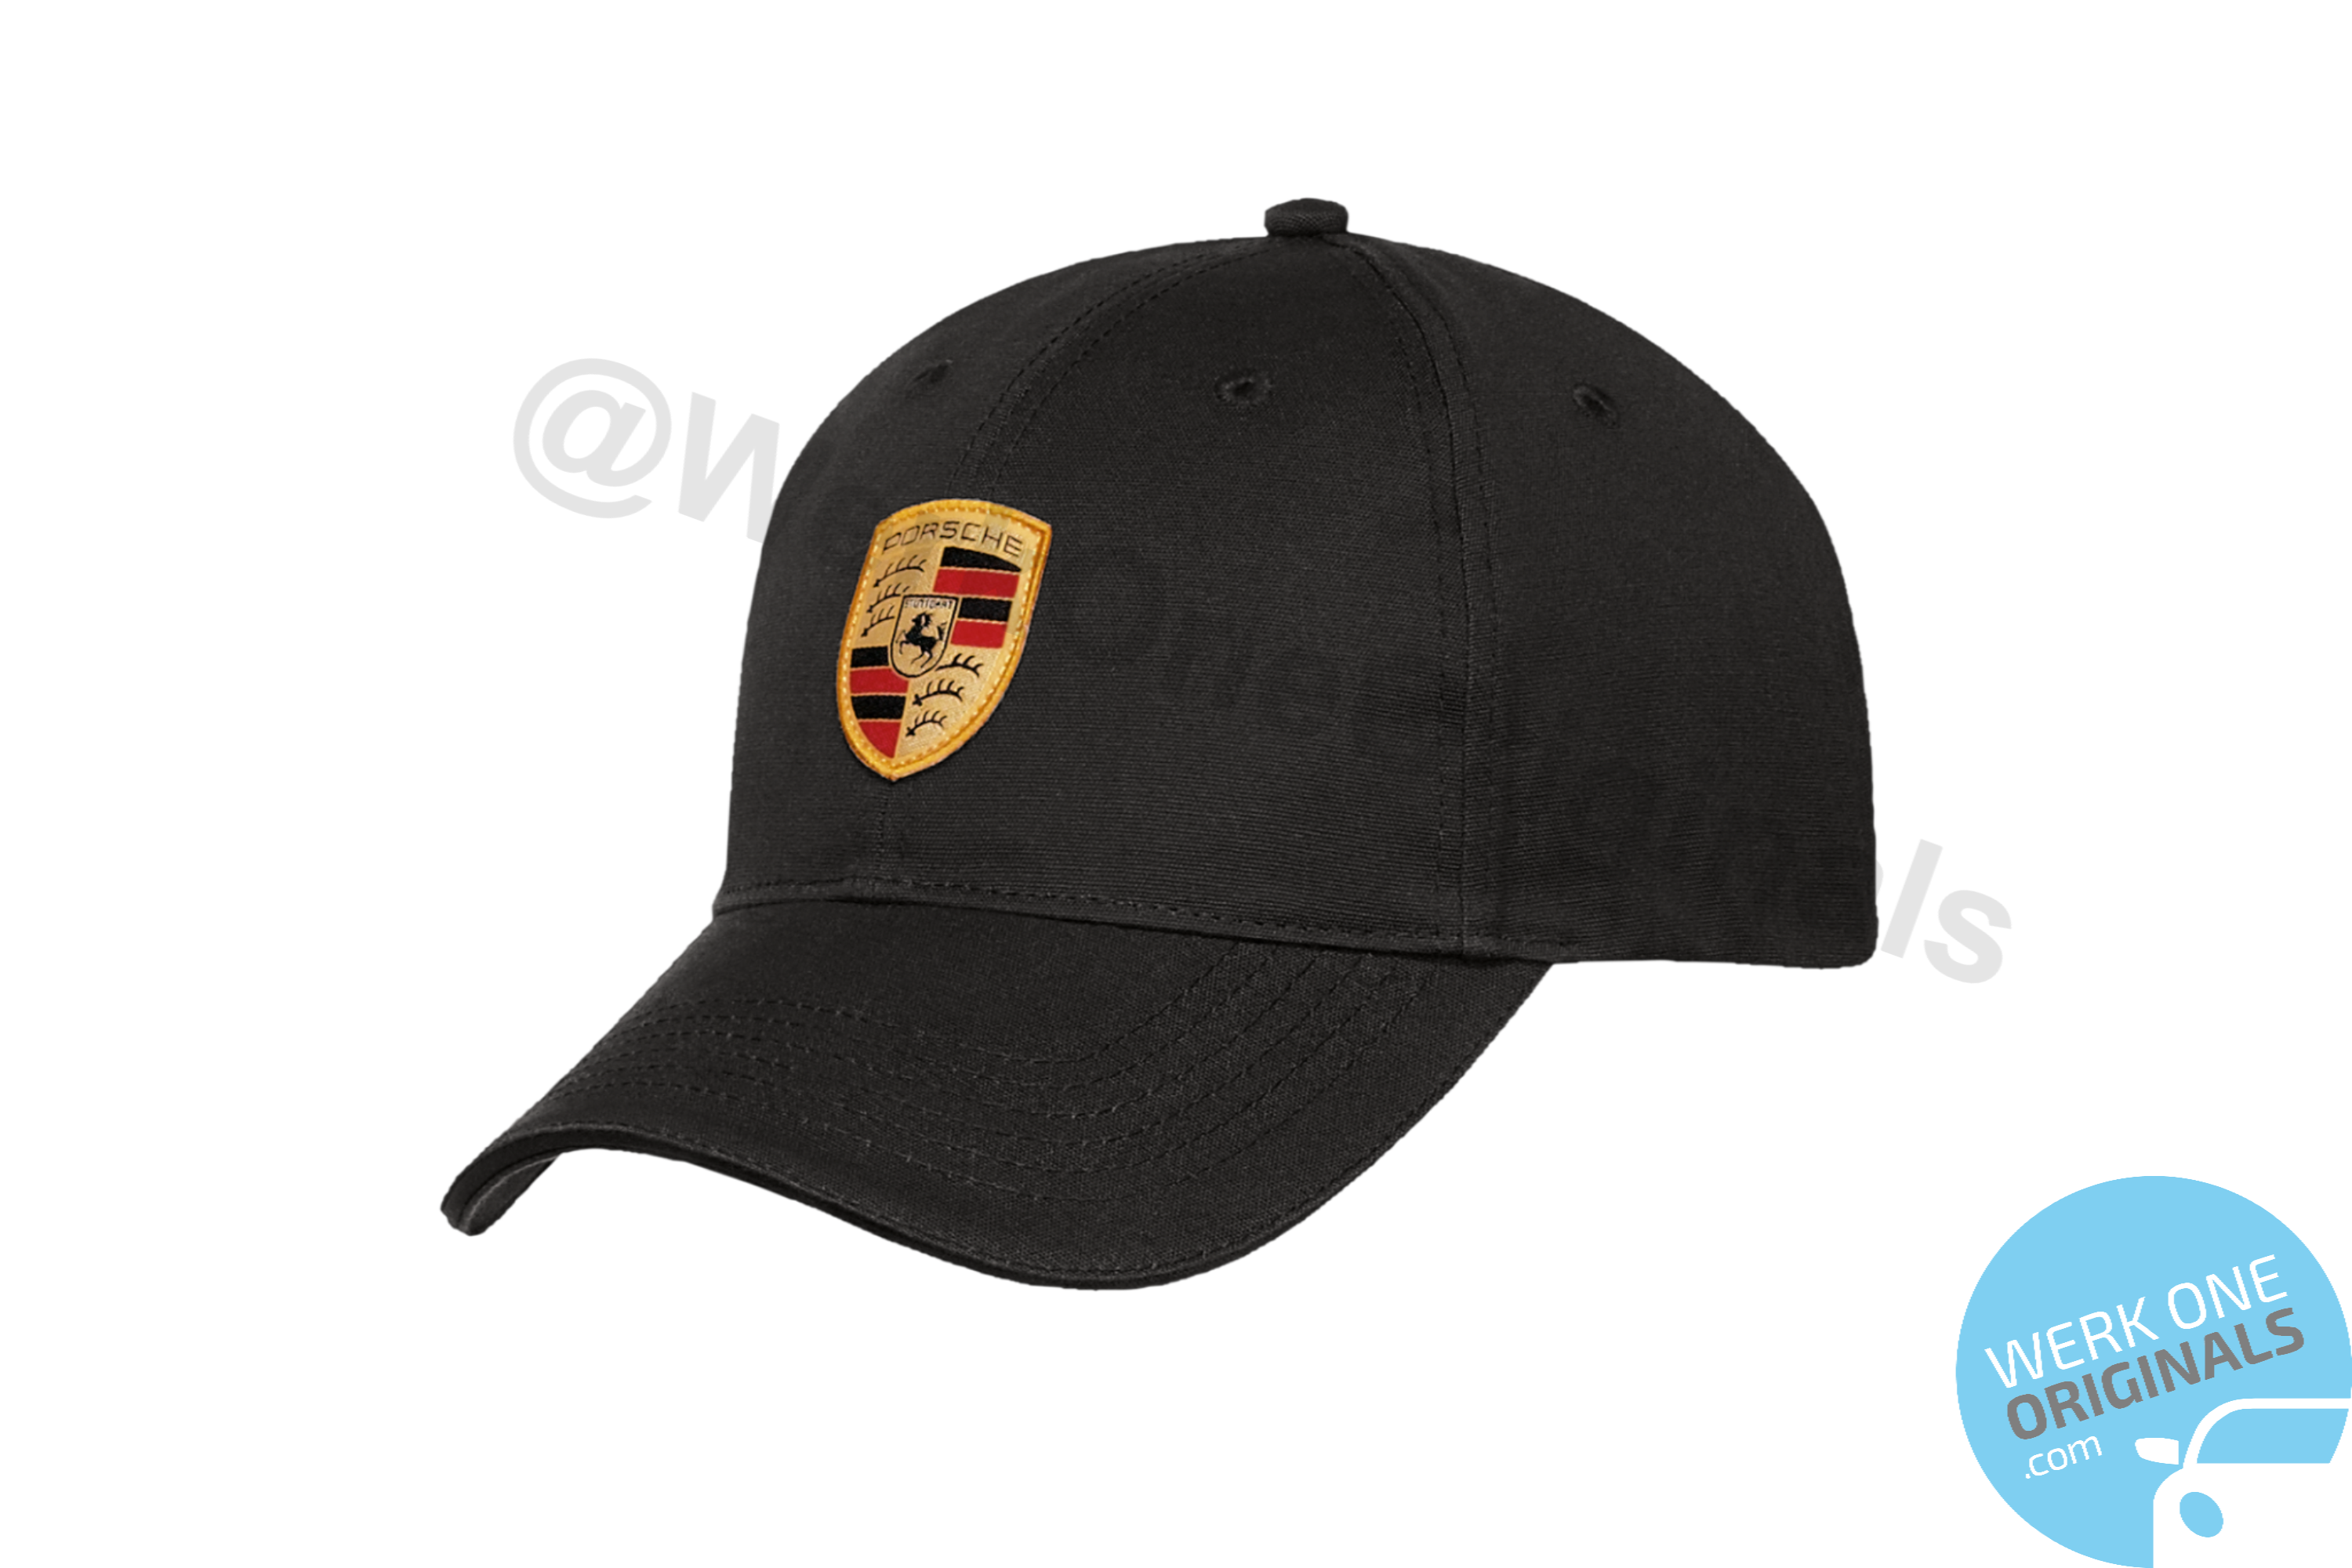 Official Porsche Baseball Cap - Black